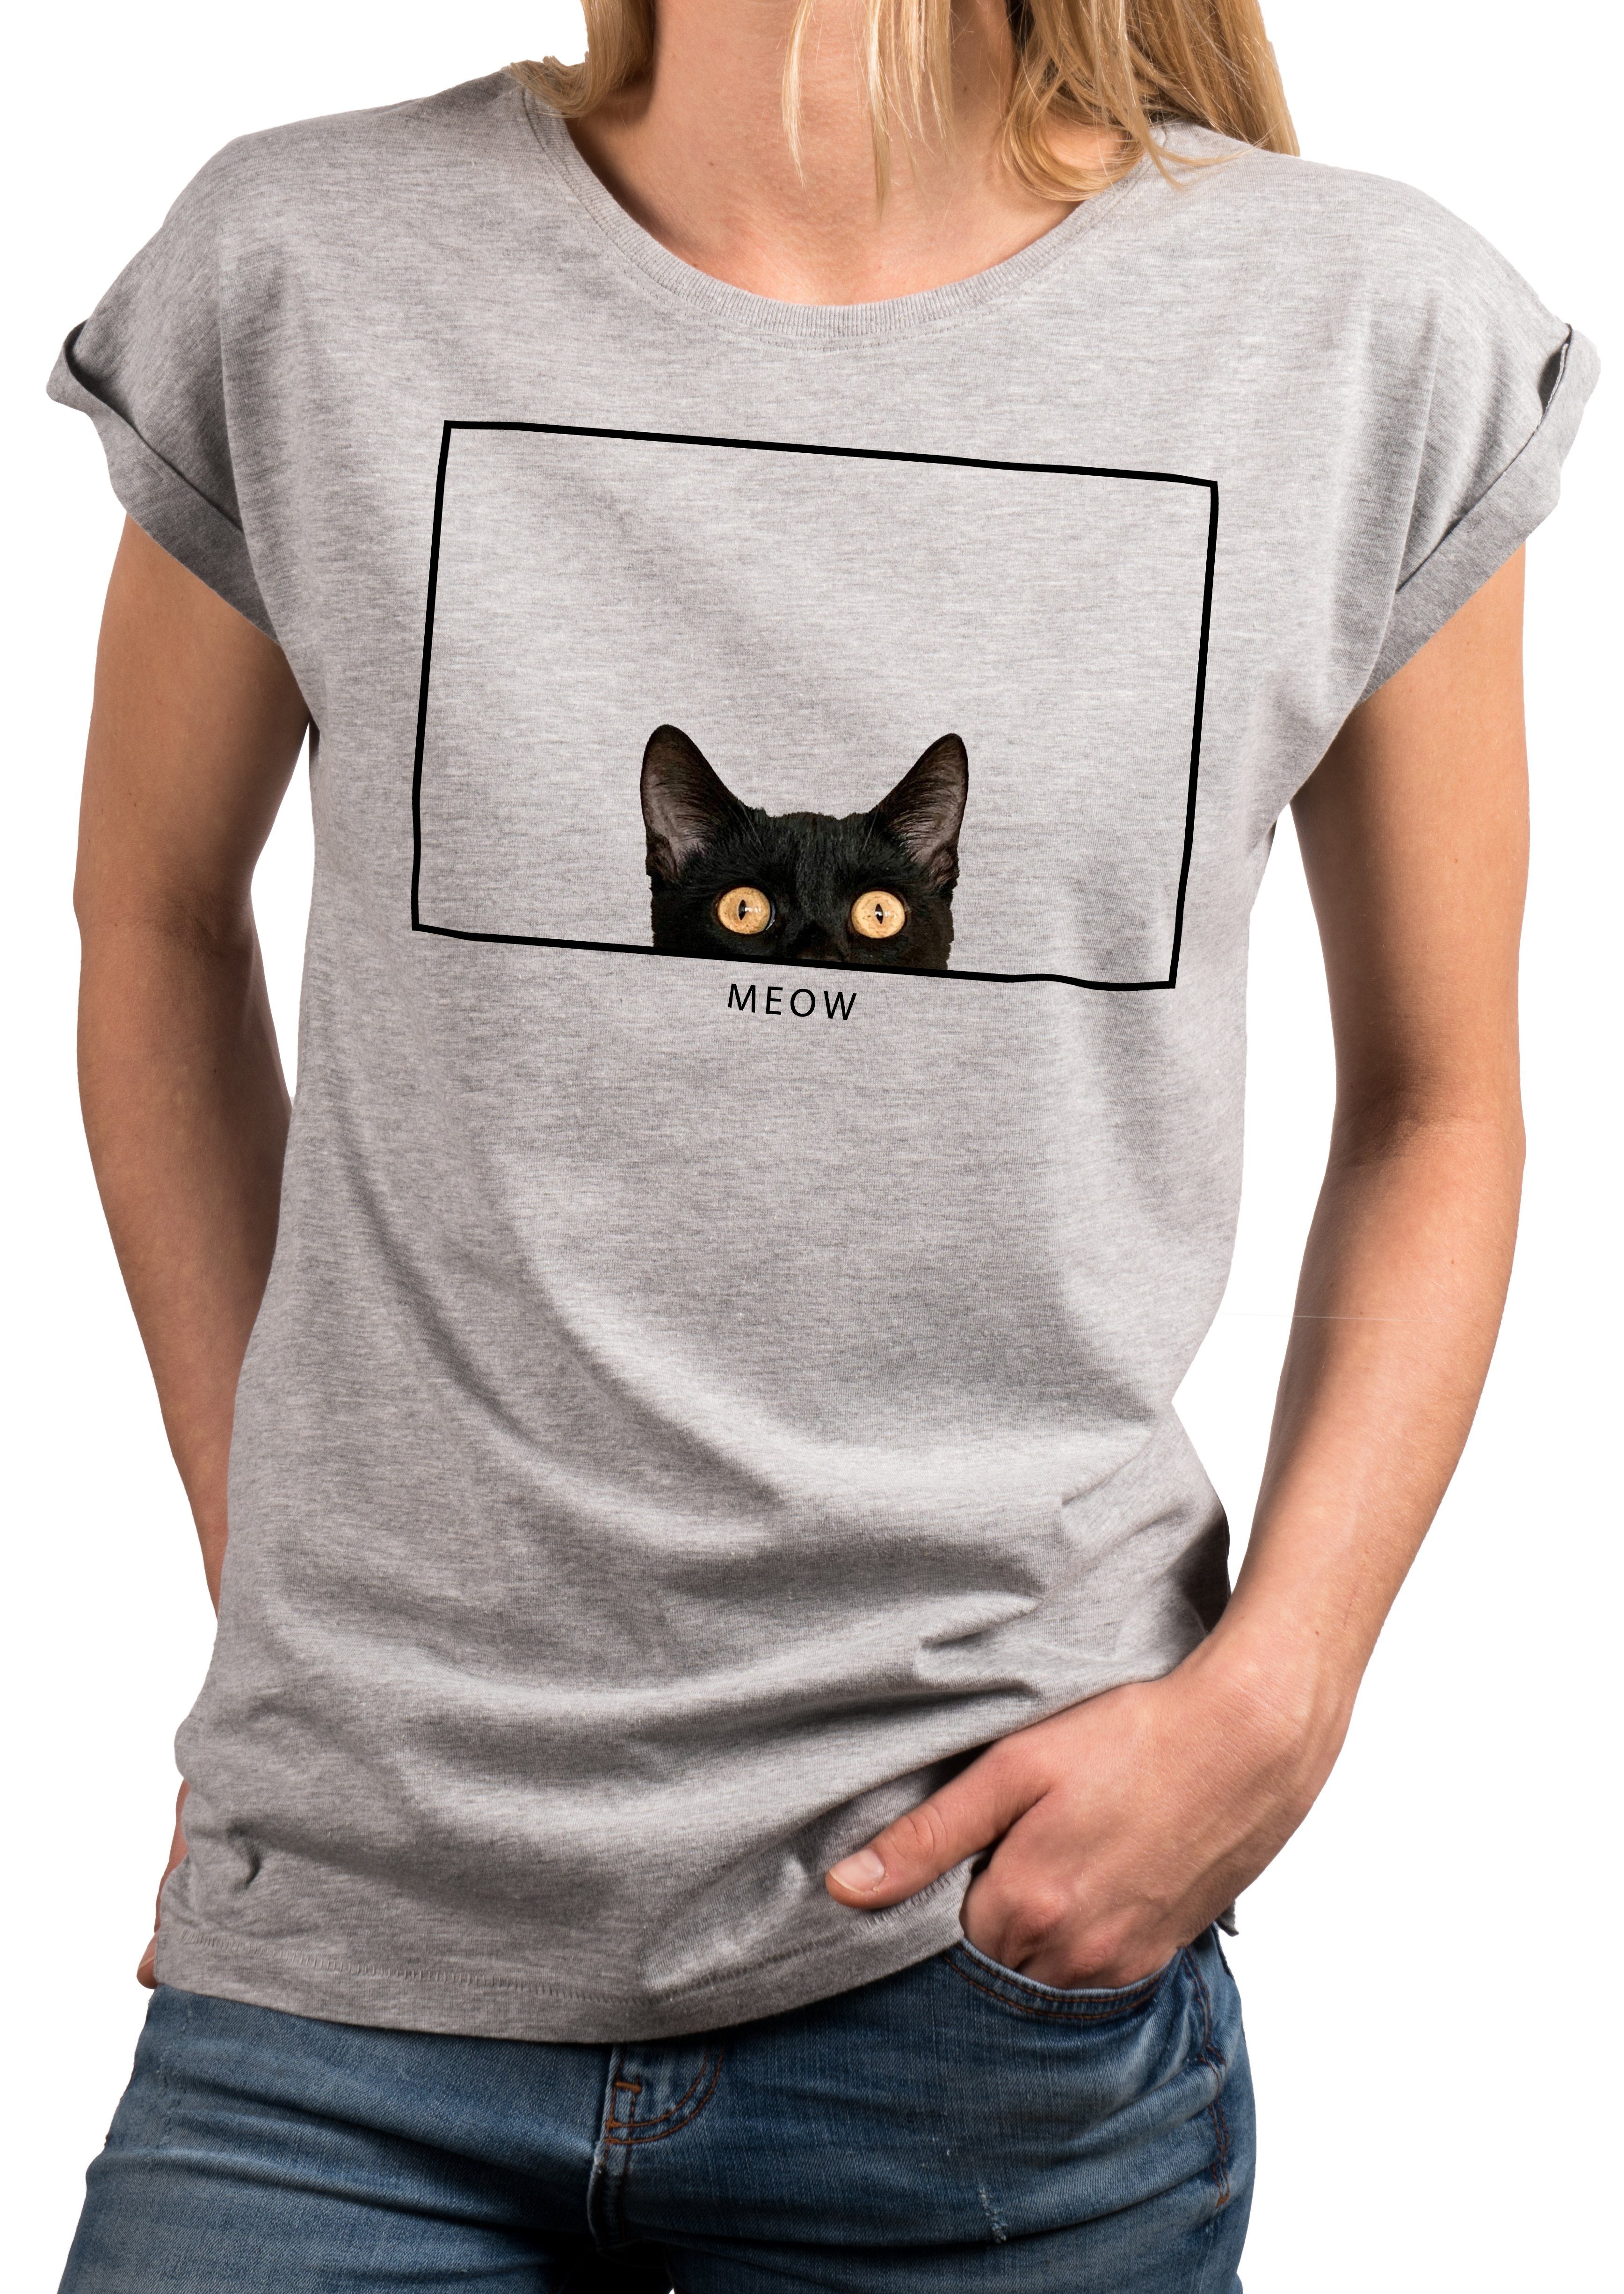 MAKAYA Katzenshirt Grau Lustige Damen Katzenliebhaber, Print-Shirt Geschenke Katzenmotiv Top Katzenfans Katzen